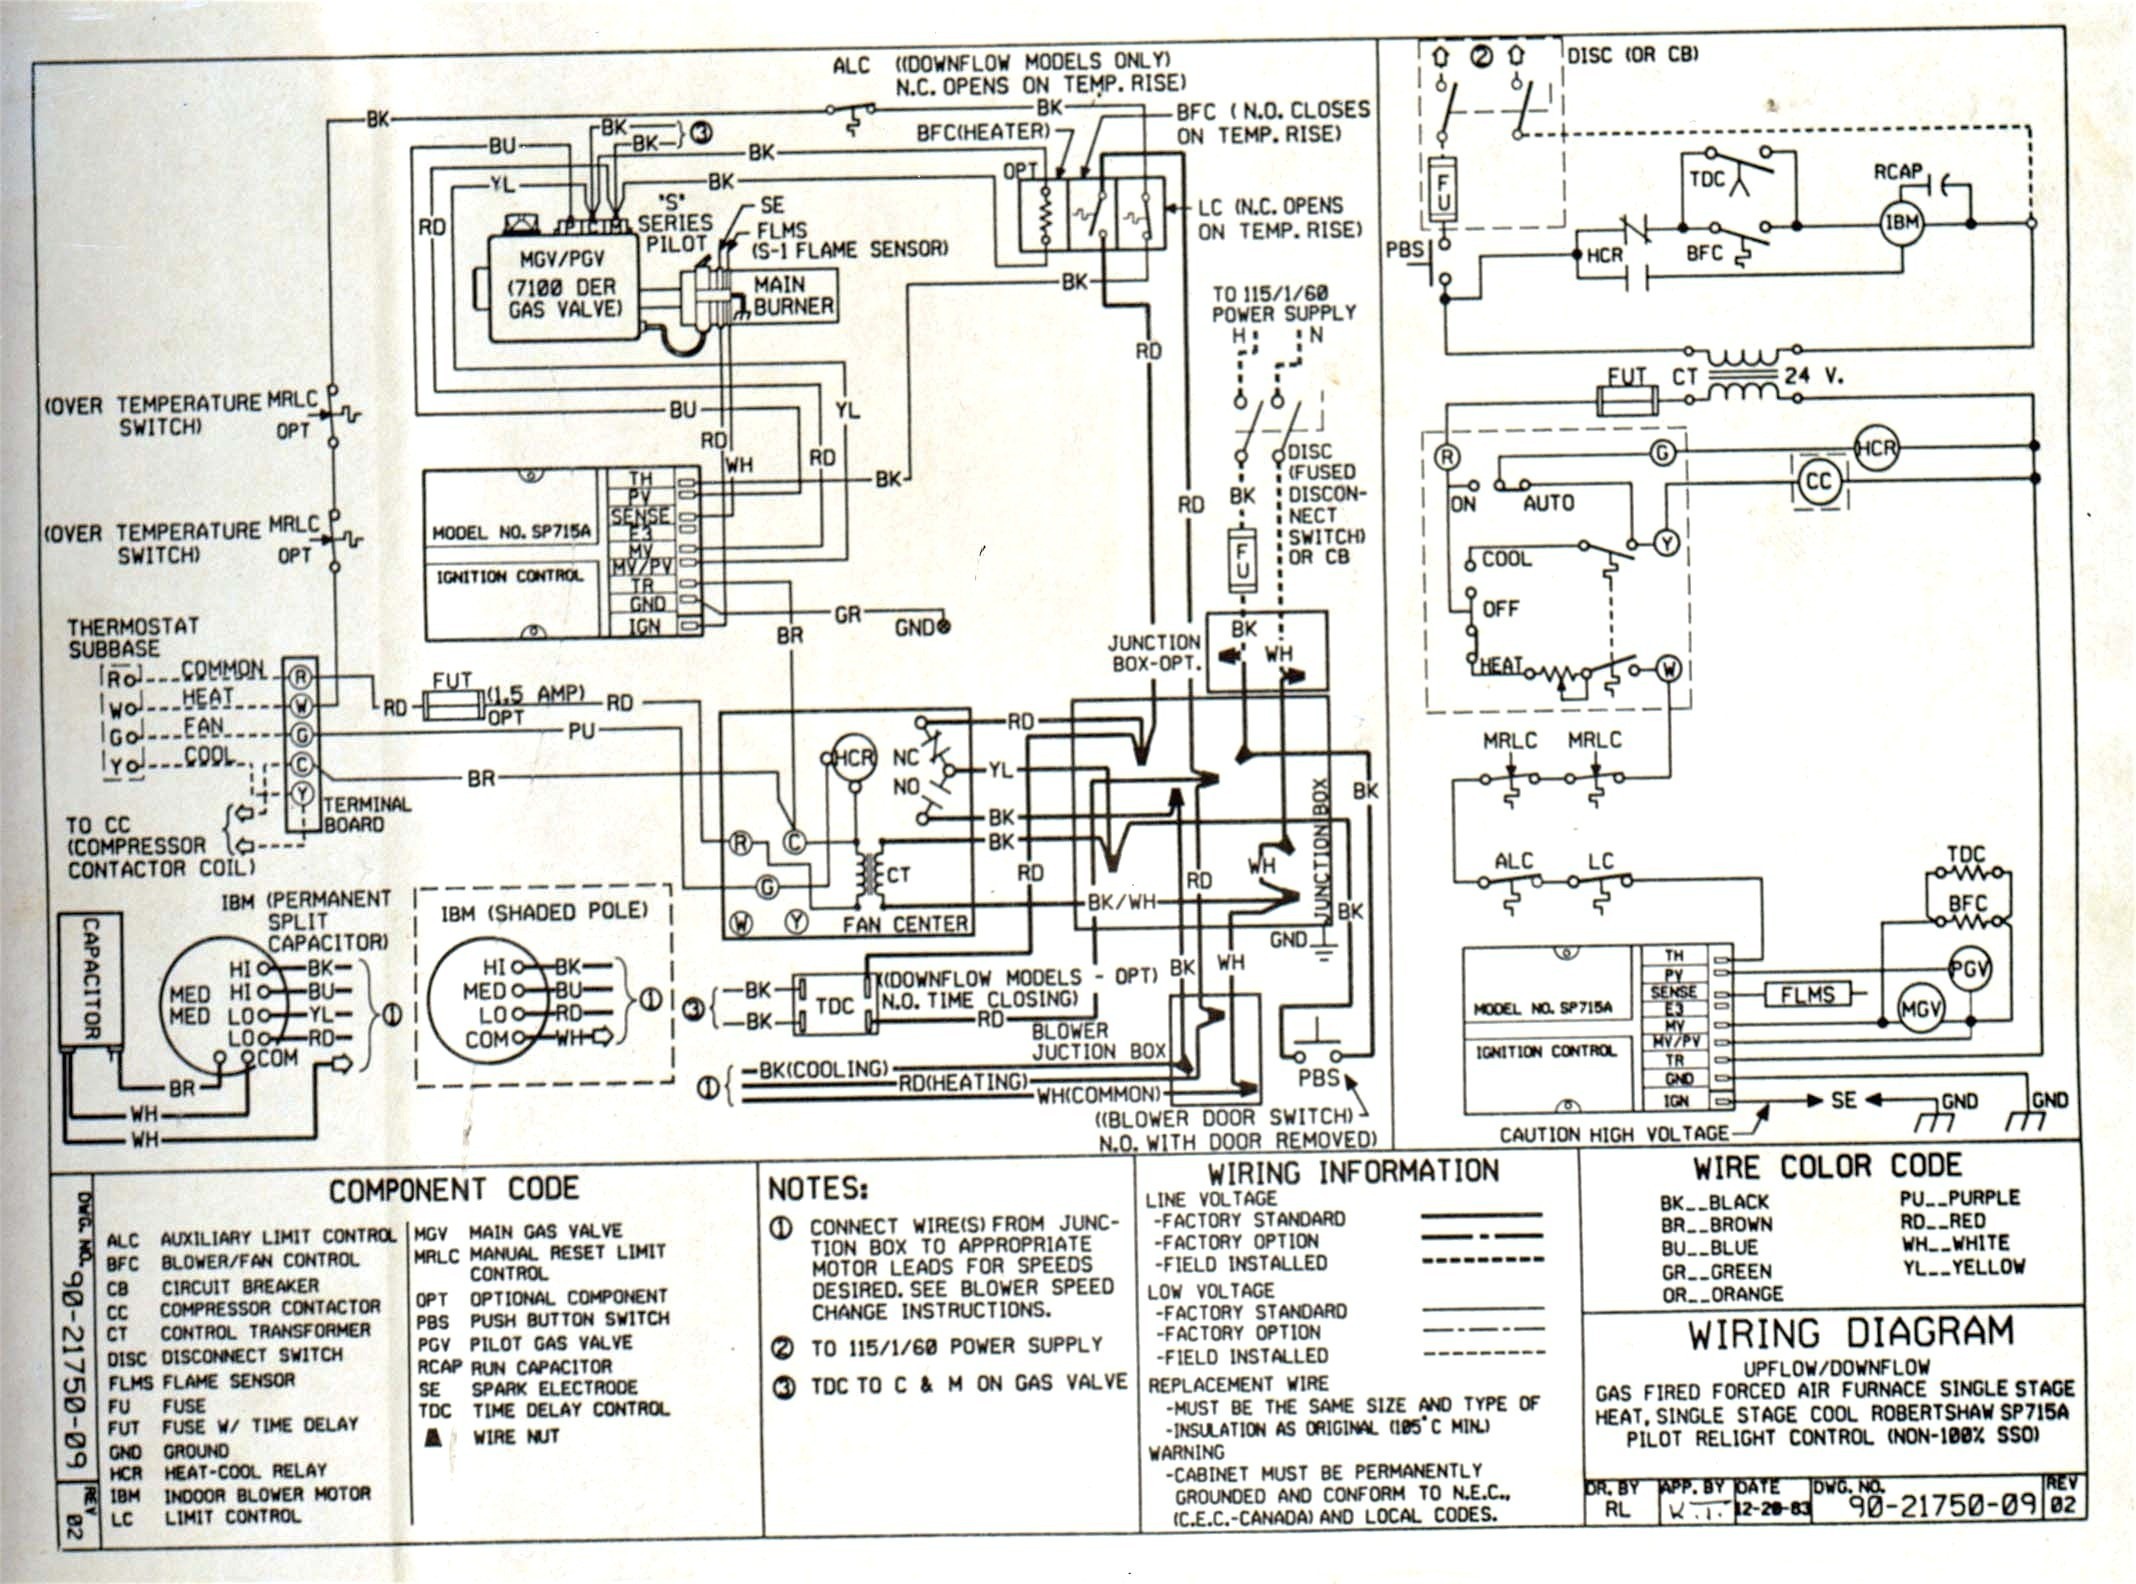 Motor Inverter Wiring Diagram Save Wiring Diagram Ac Panasonic Inverter Save Wiring Diagram Ac Split